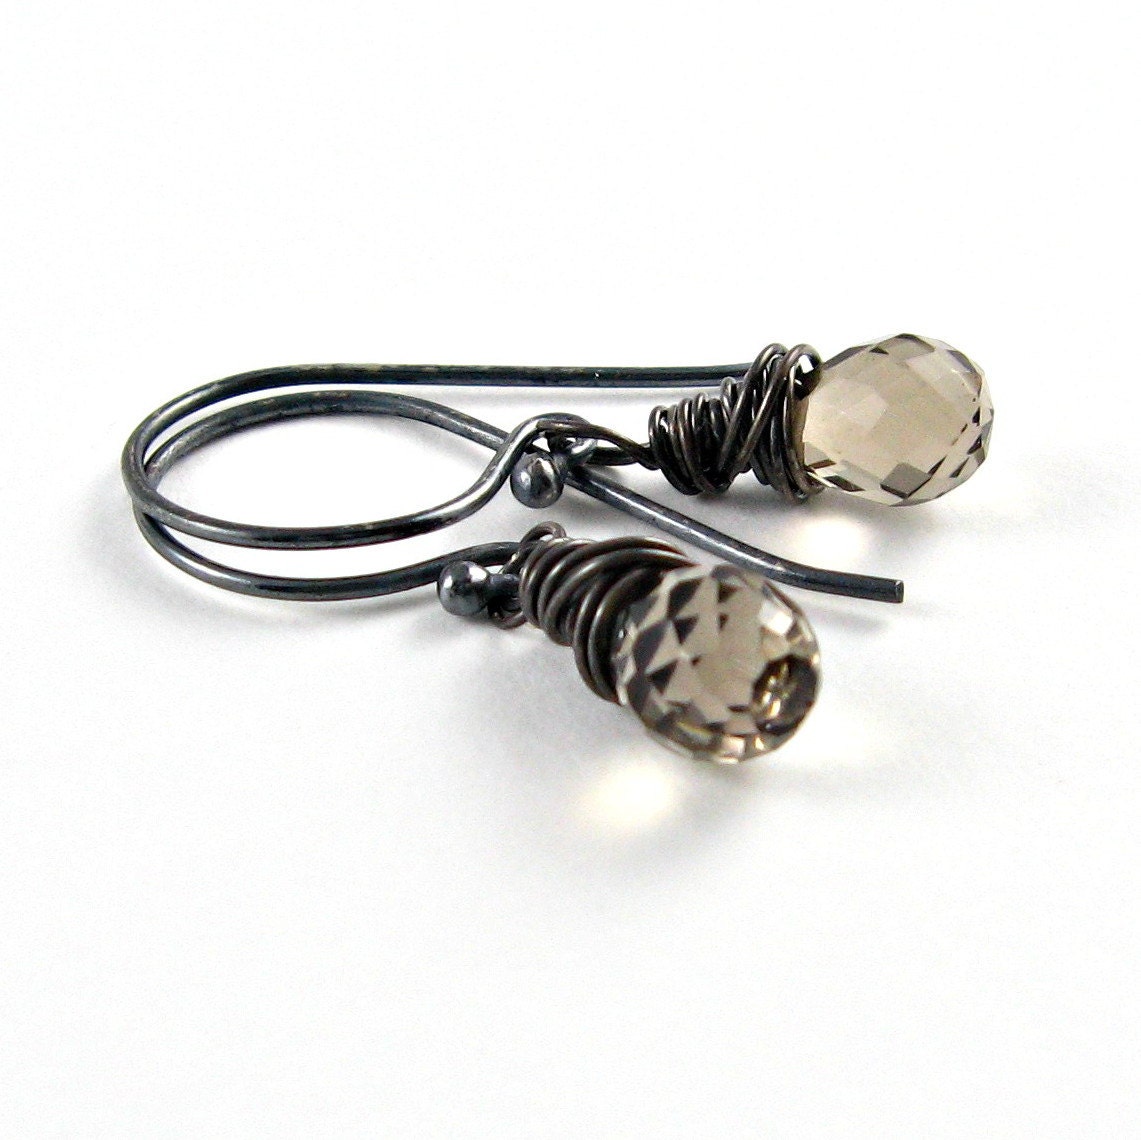 Smokey Quartz Dangle Earrings Oxidized Sterling Silver Drop Earrings Wire Wrapped Gemstone Earrings French Roast Coffee Everyday Earrings - newhopebeading